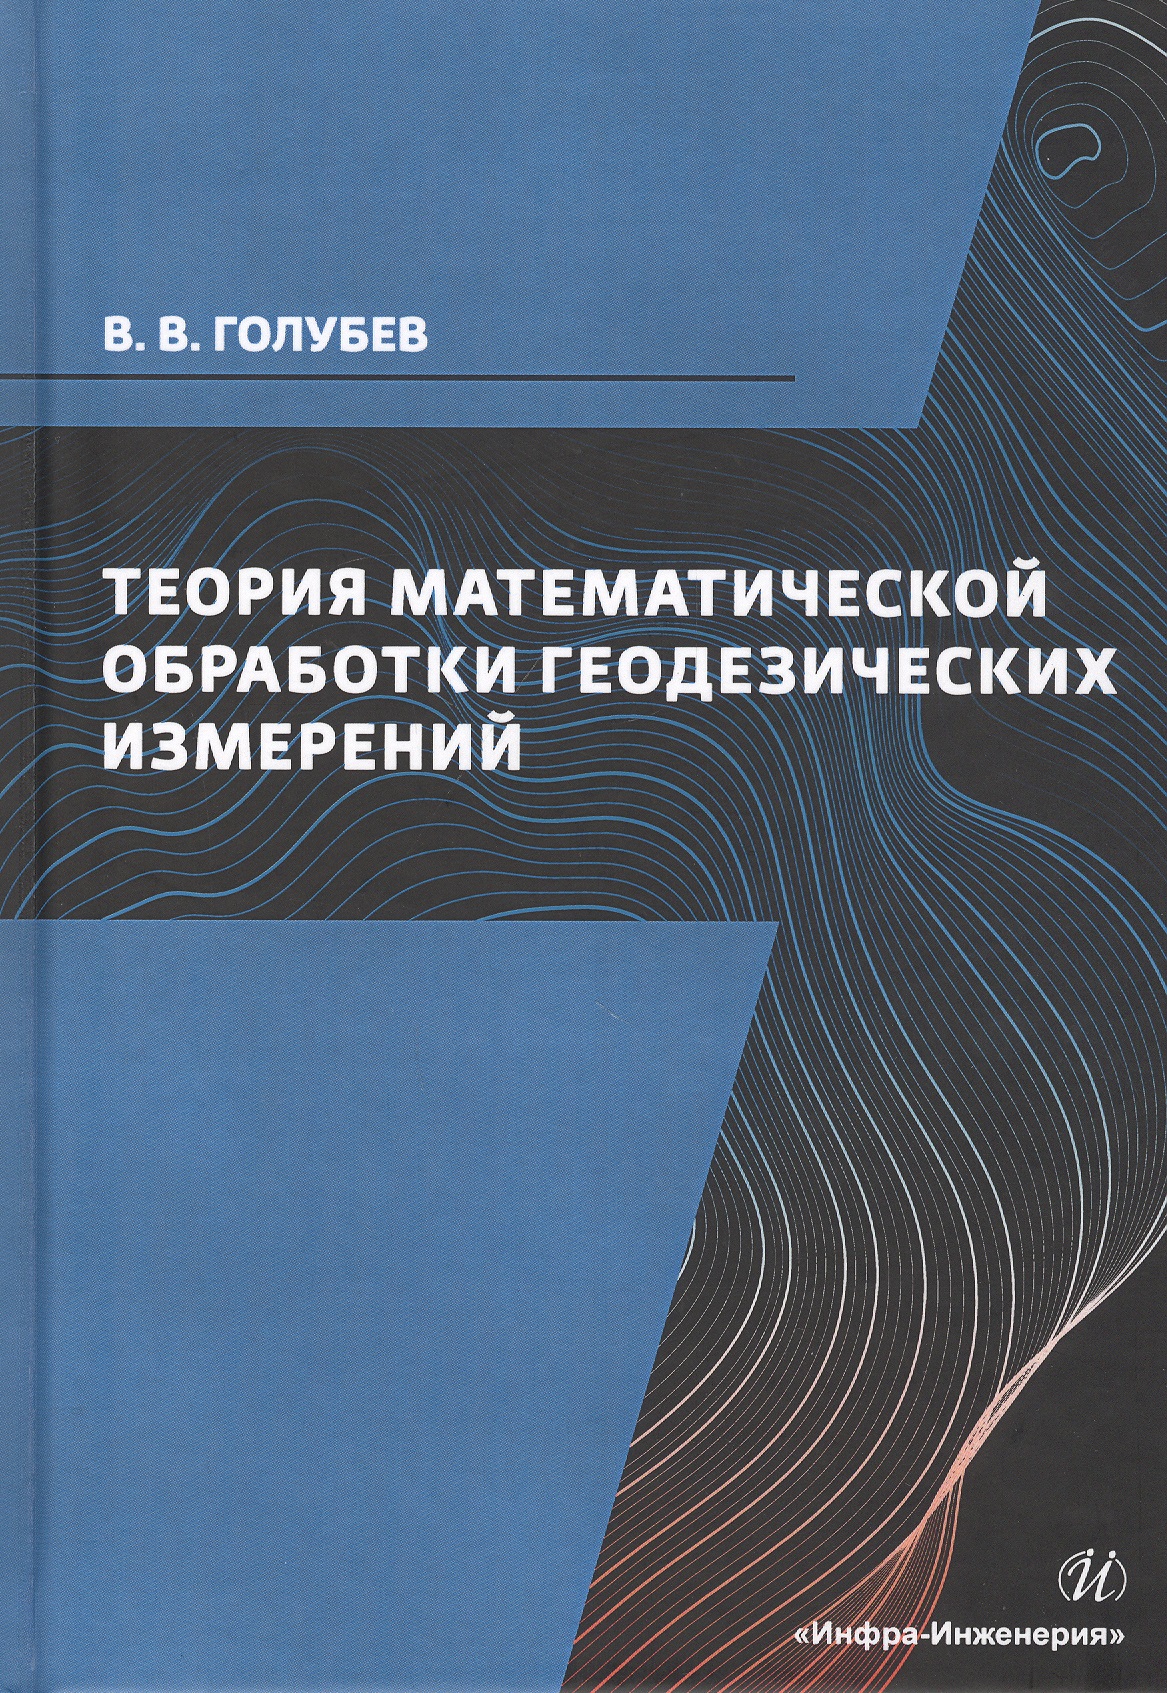 Теория математической обработки геодезических измерений. Учебник